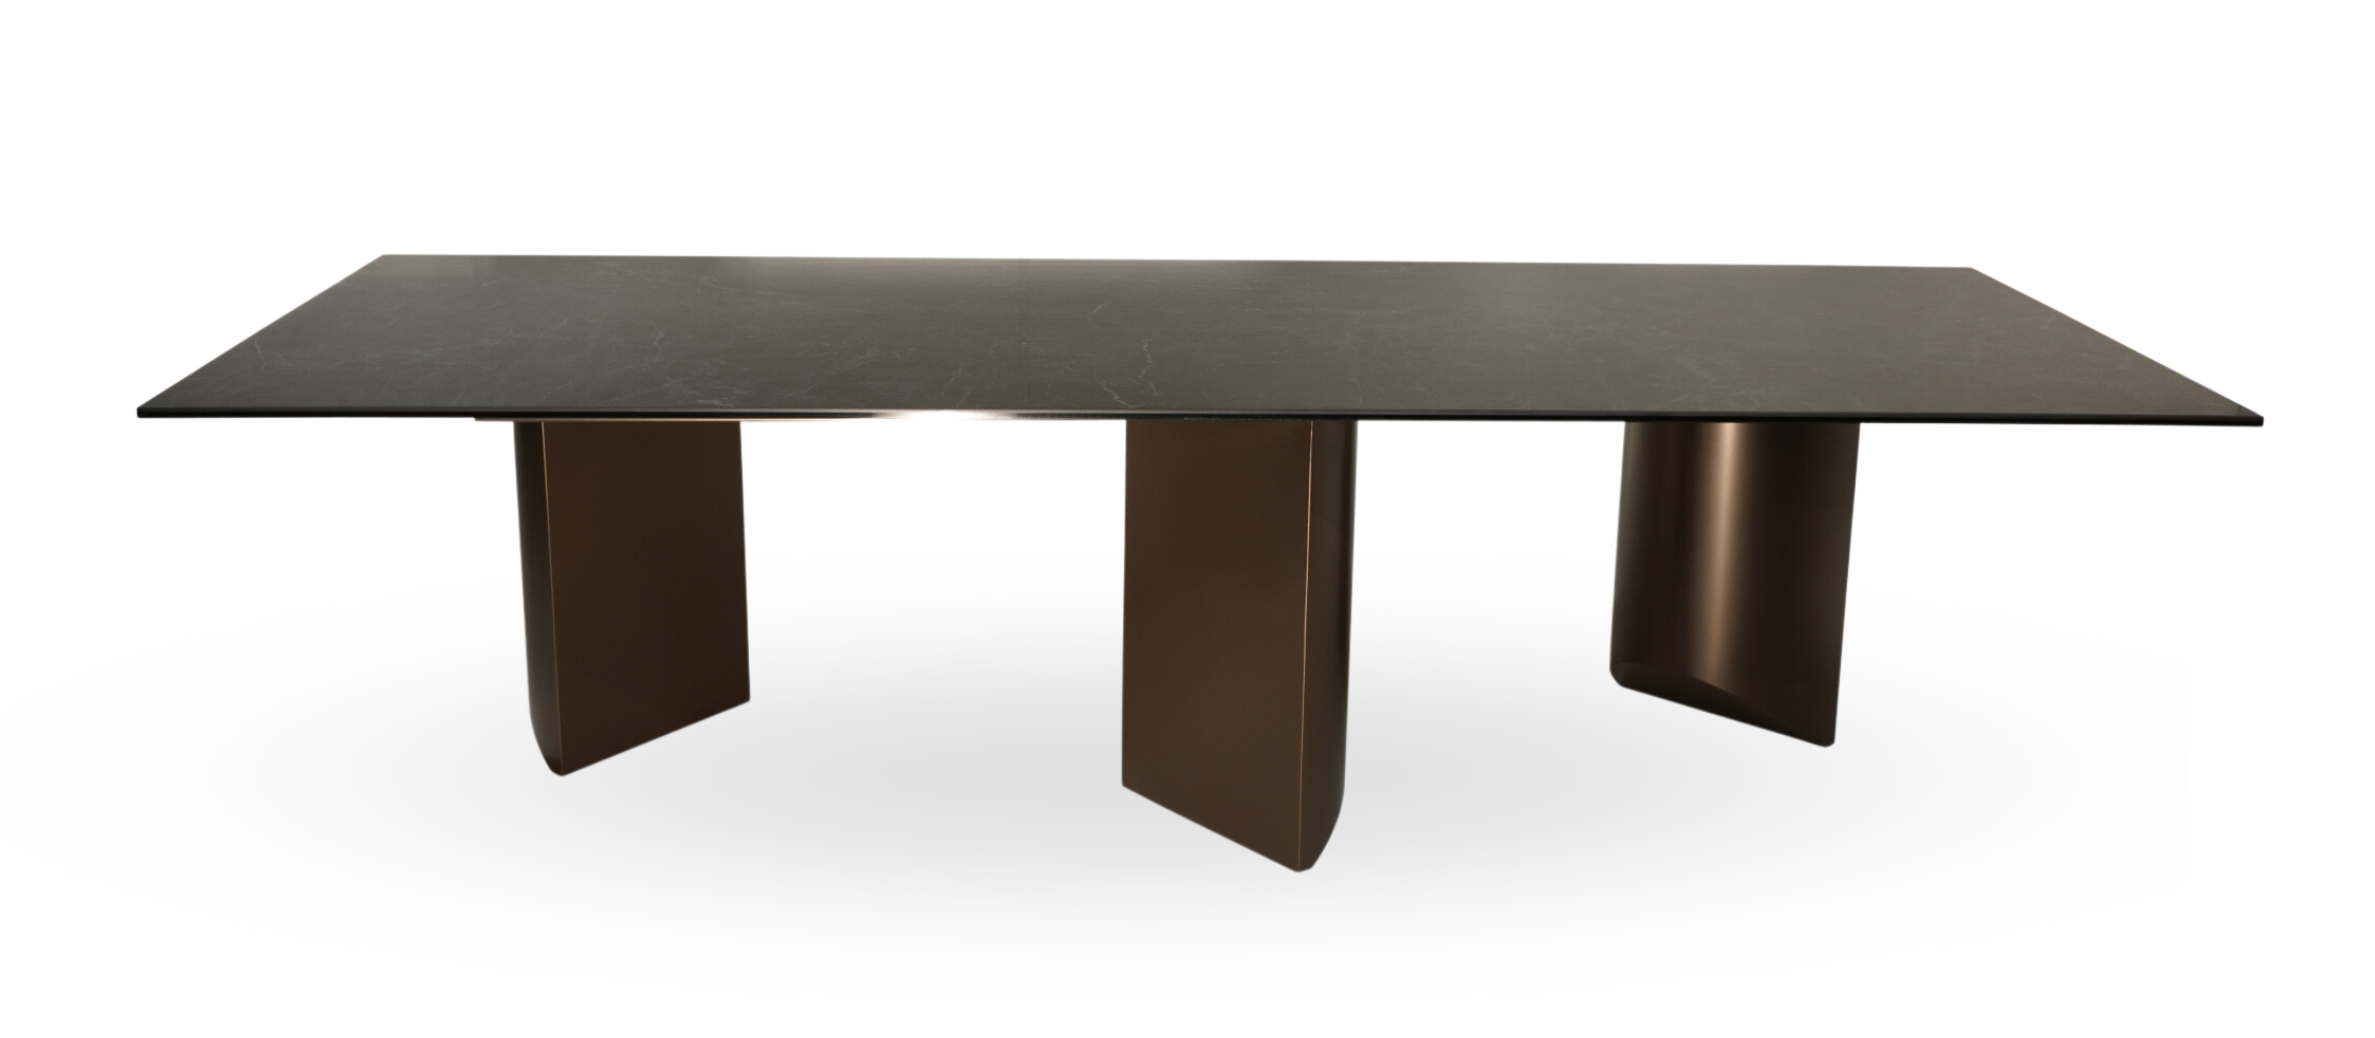 A24 stół na 3 brązowych kolumnach; bardzo stabilna konstrukcja z blatem ze spieku kwarcowego Laminam